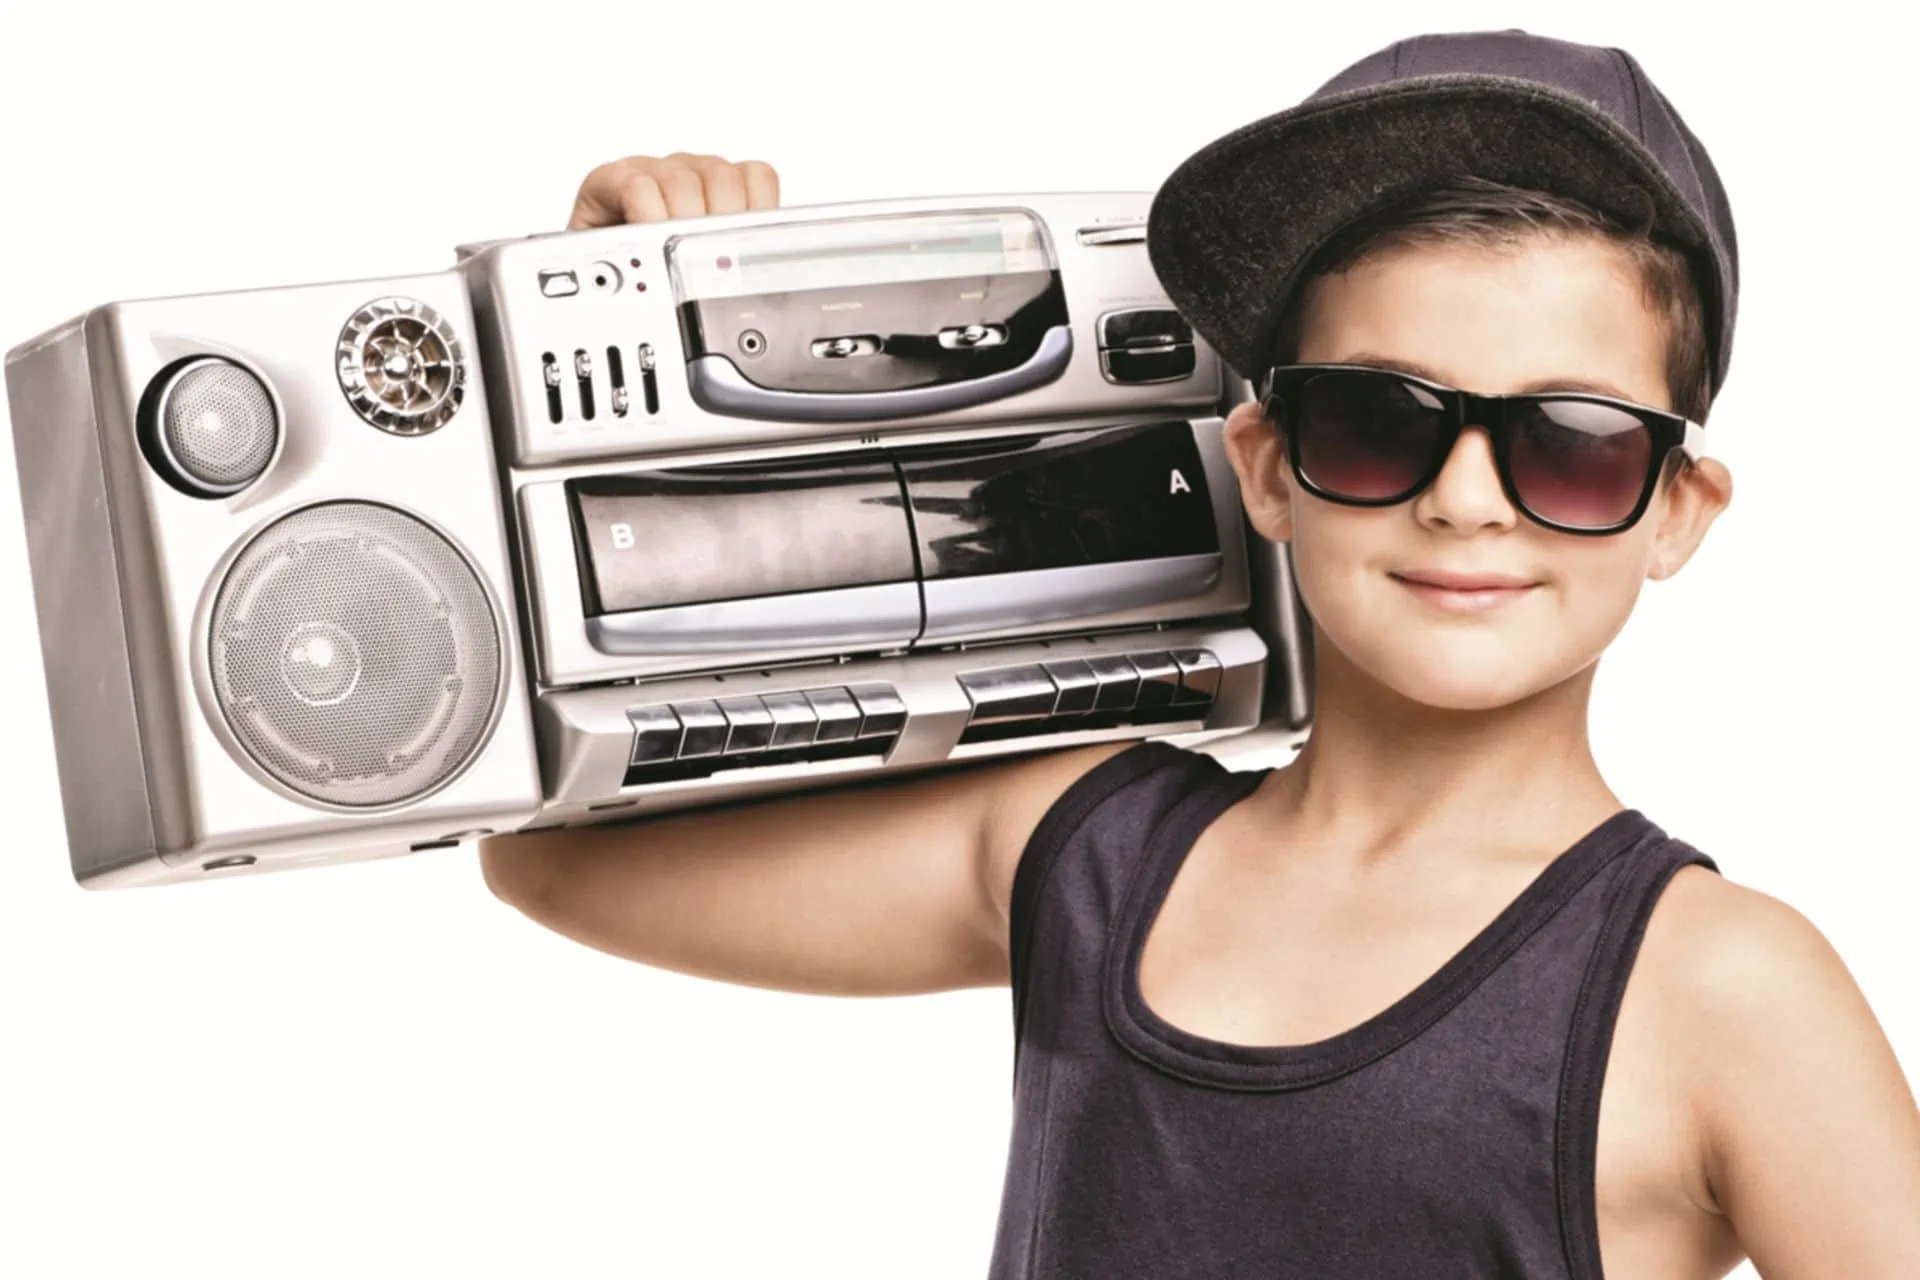 Wat is de invloed van rapmuziek op onze kinderen?